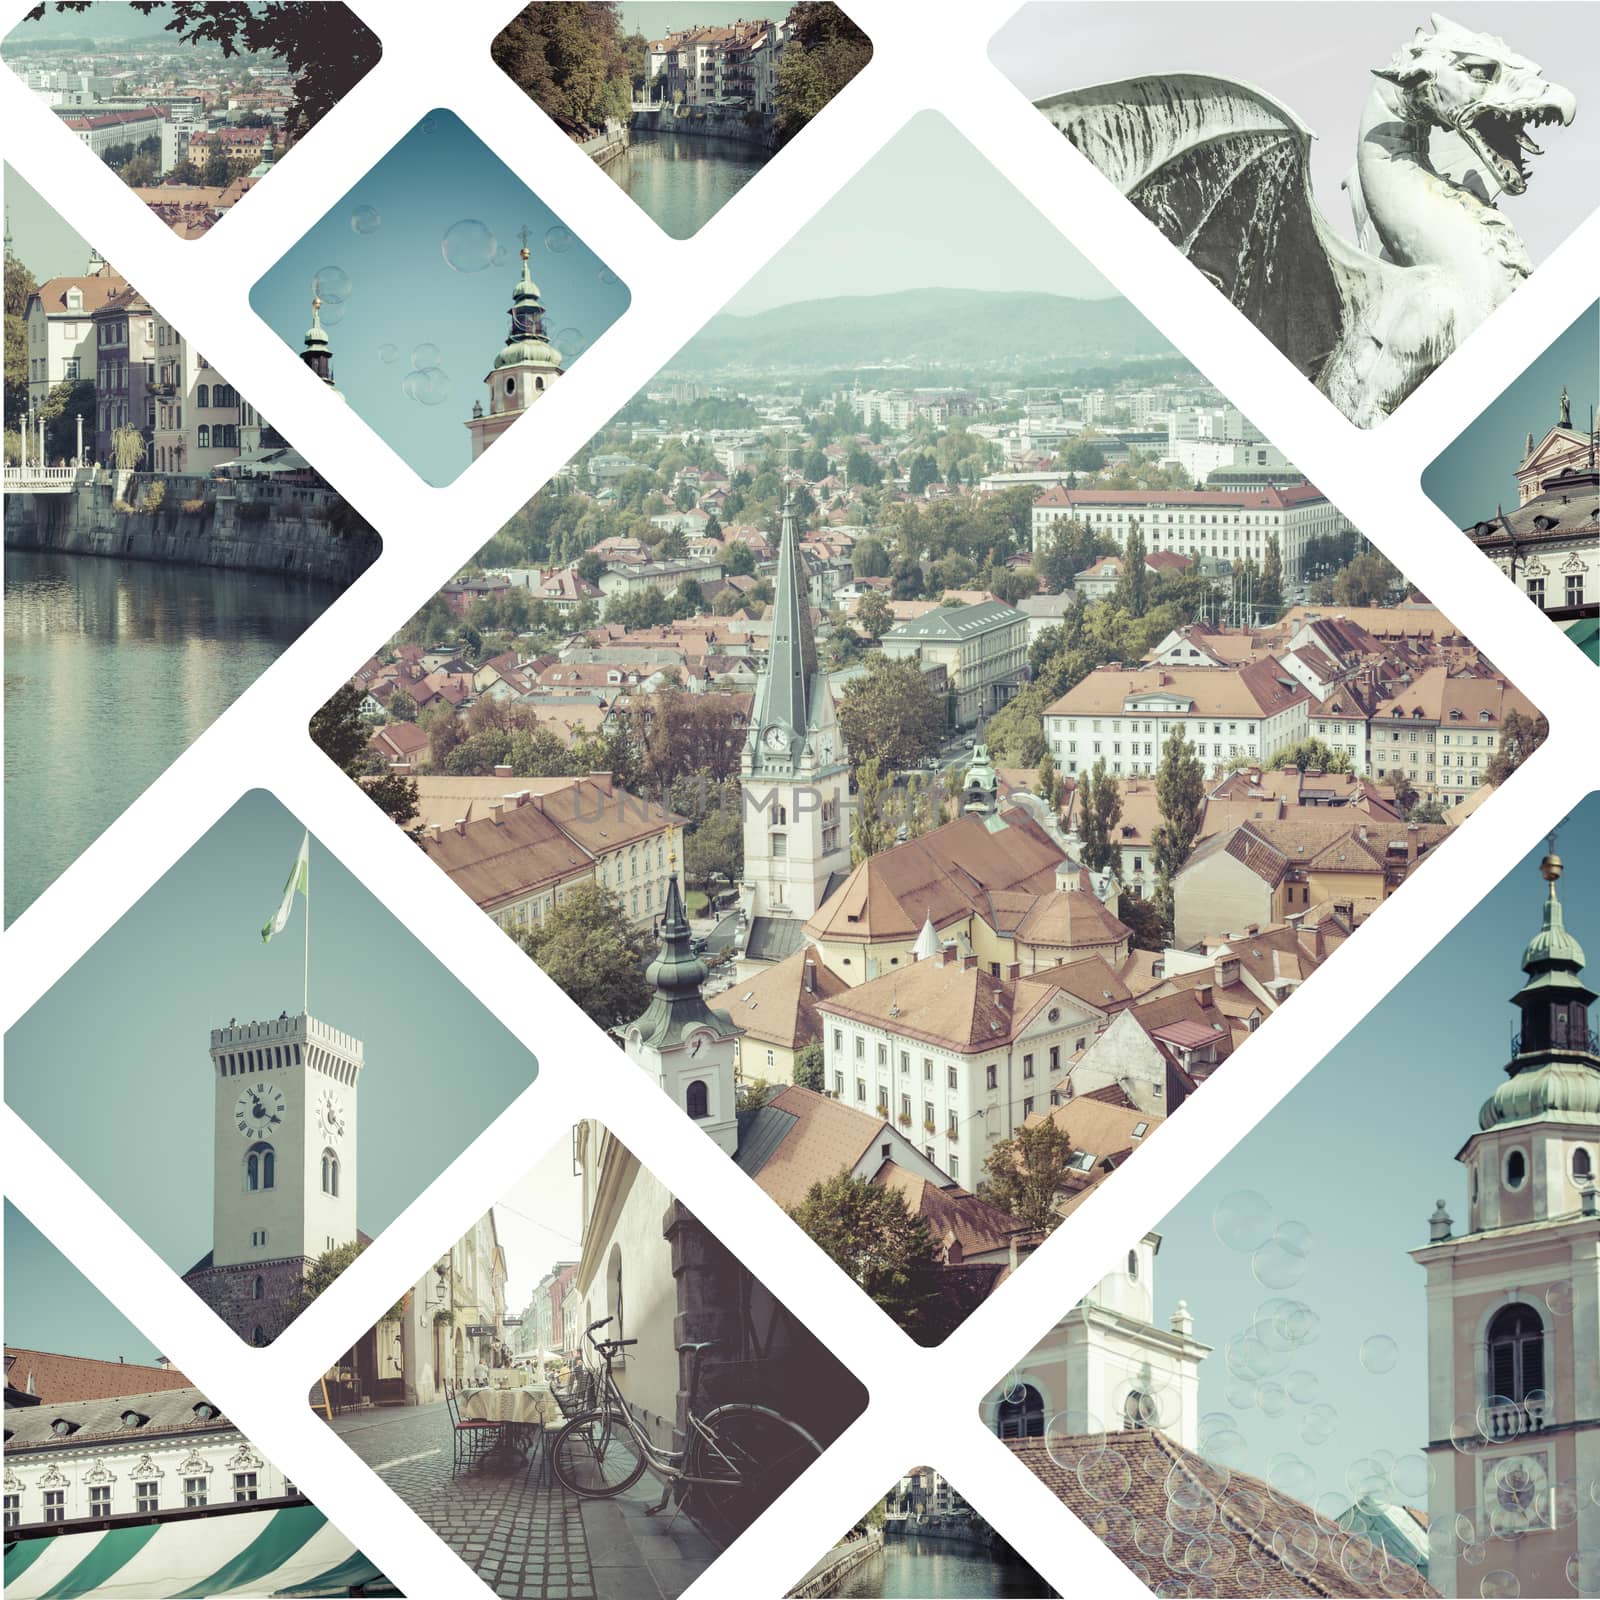 City of Ljubljana tourist postcard, capital of Slovenia by mariusz_prusaczyk